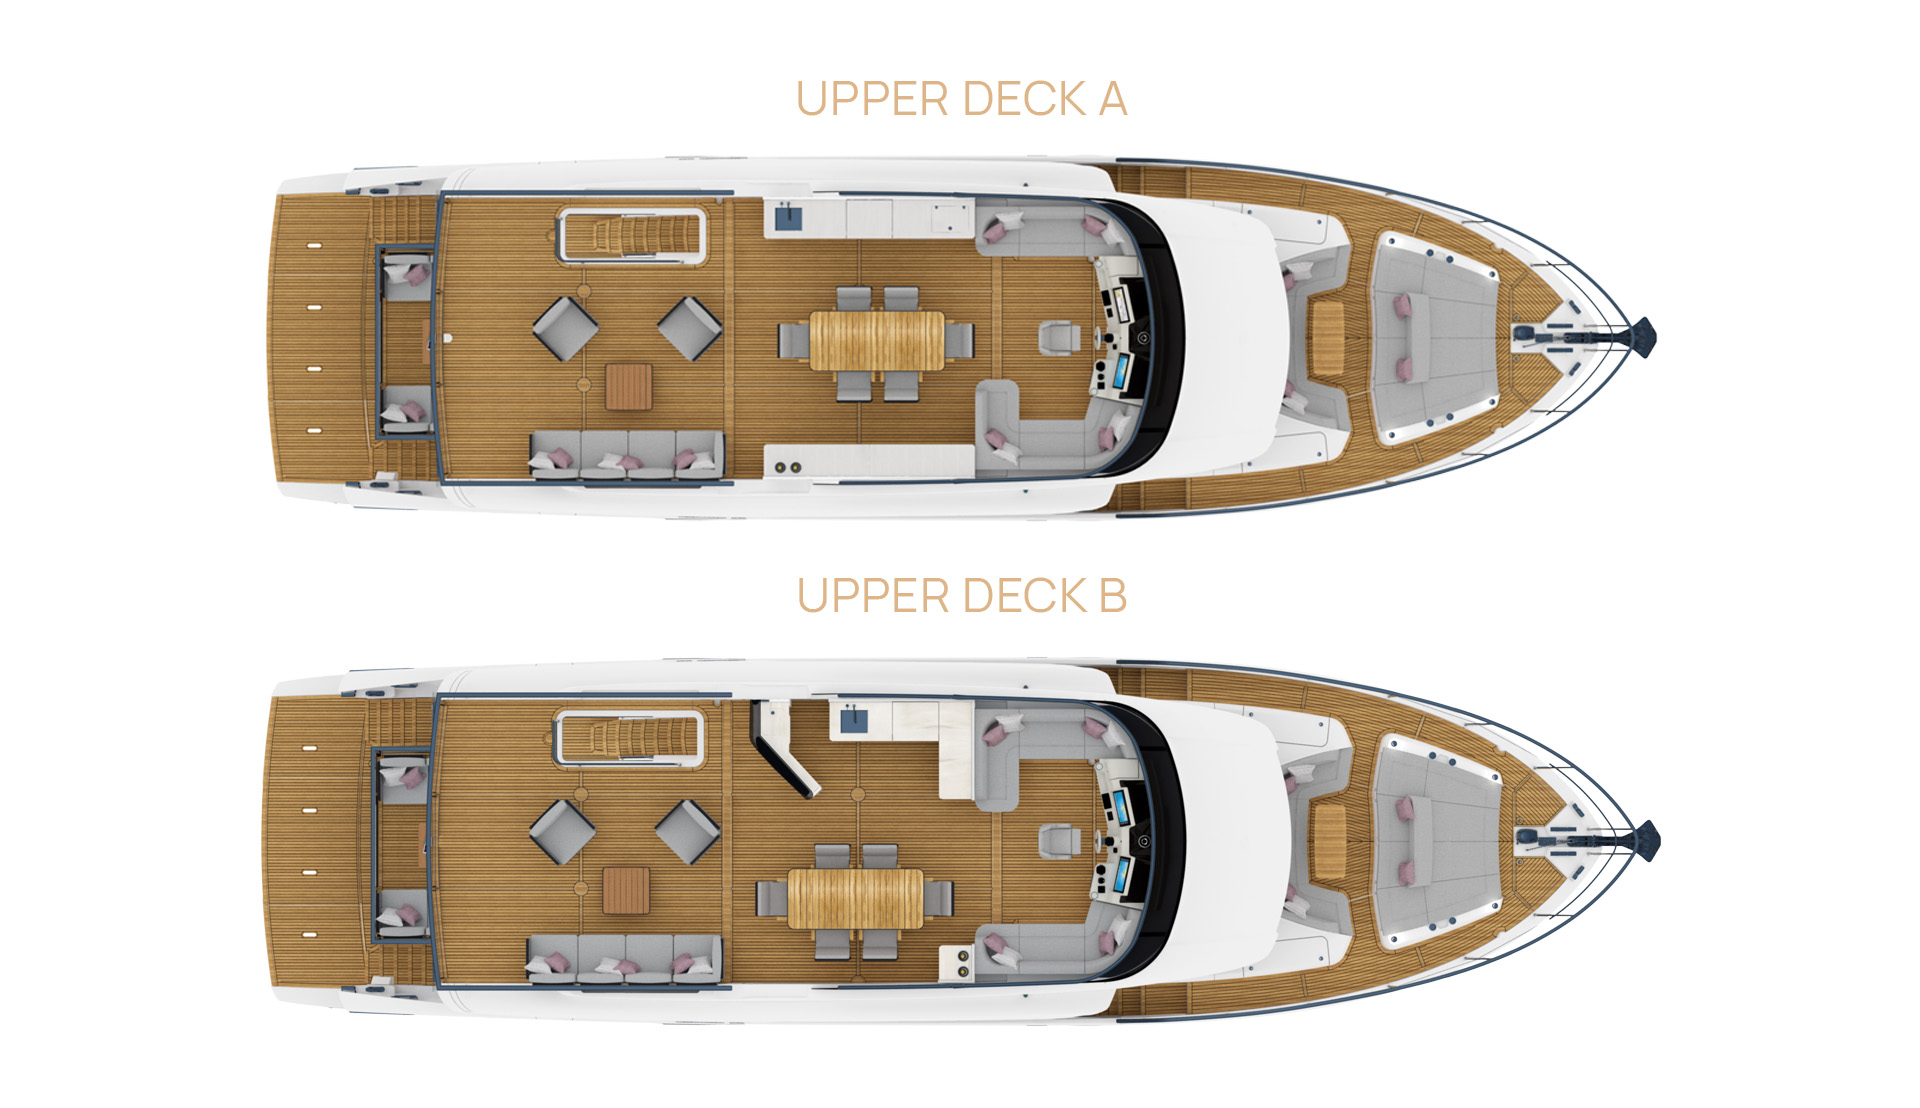 Upper deck